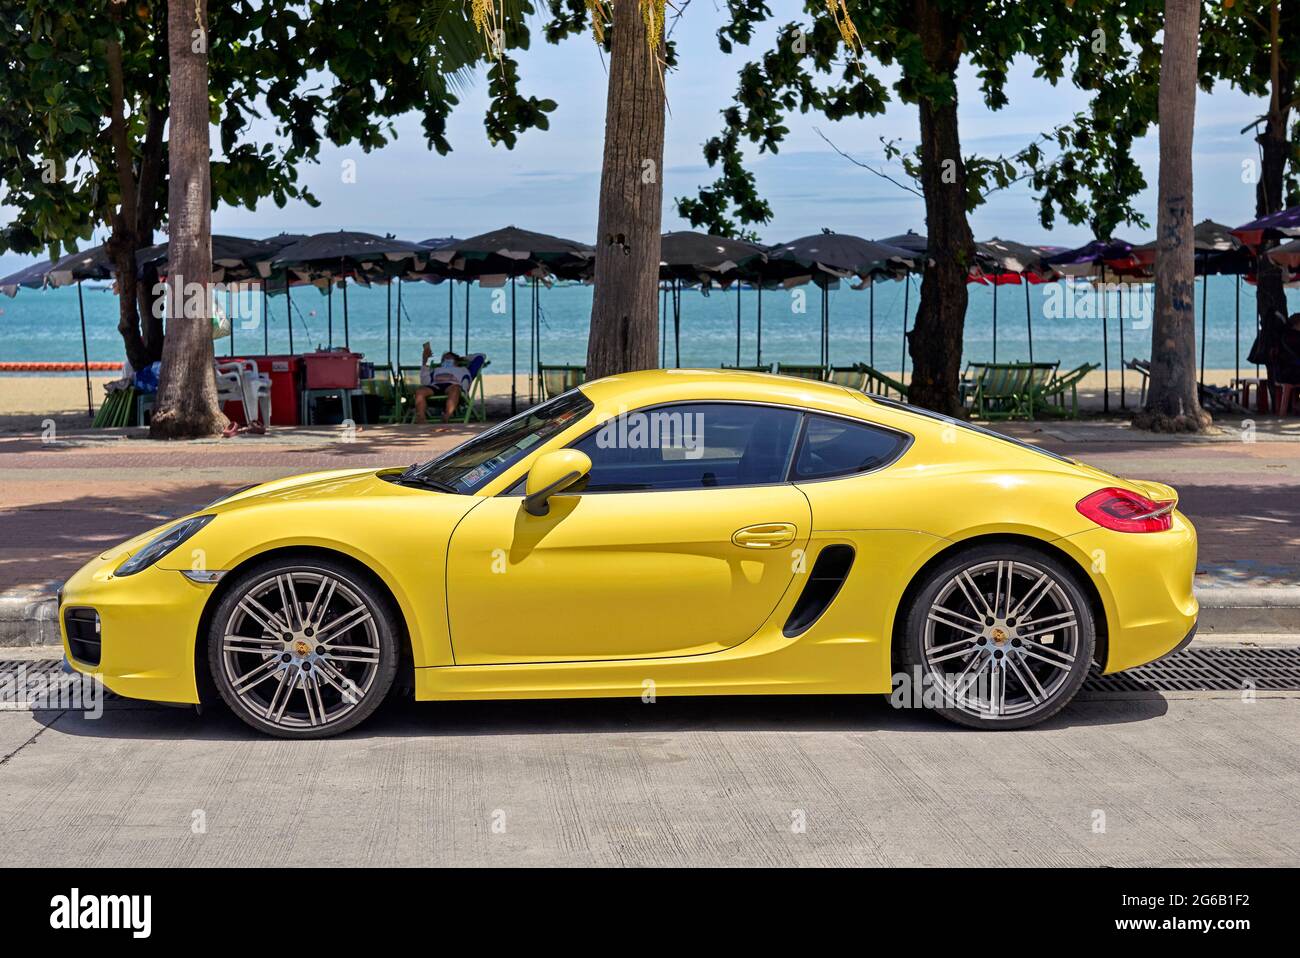 Porsche 911 Cayman GT4 yellow modern super car Stock Photo